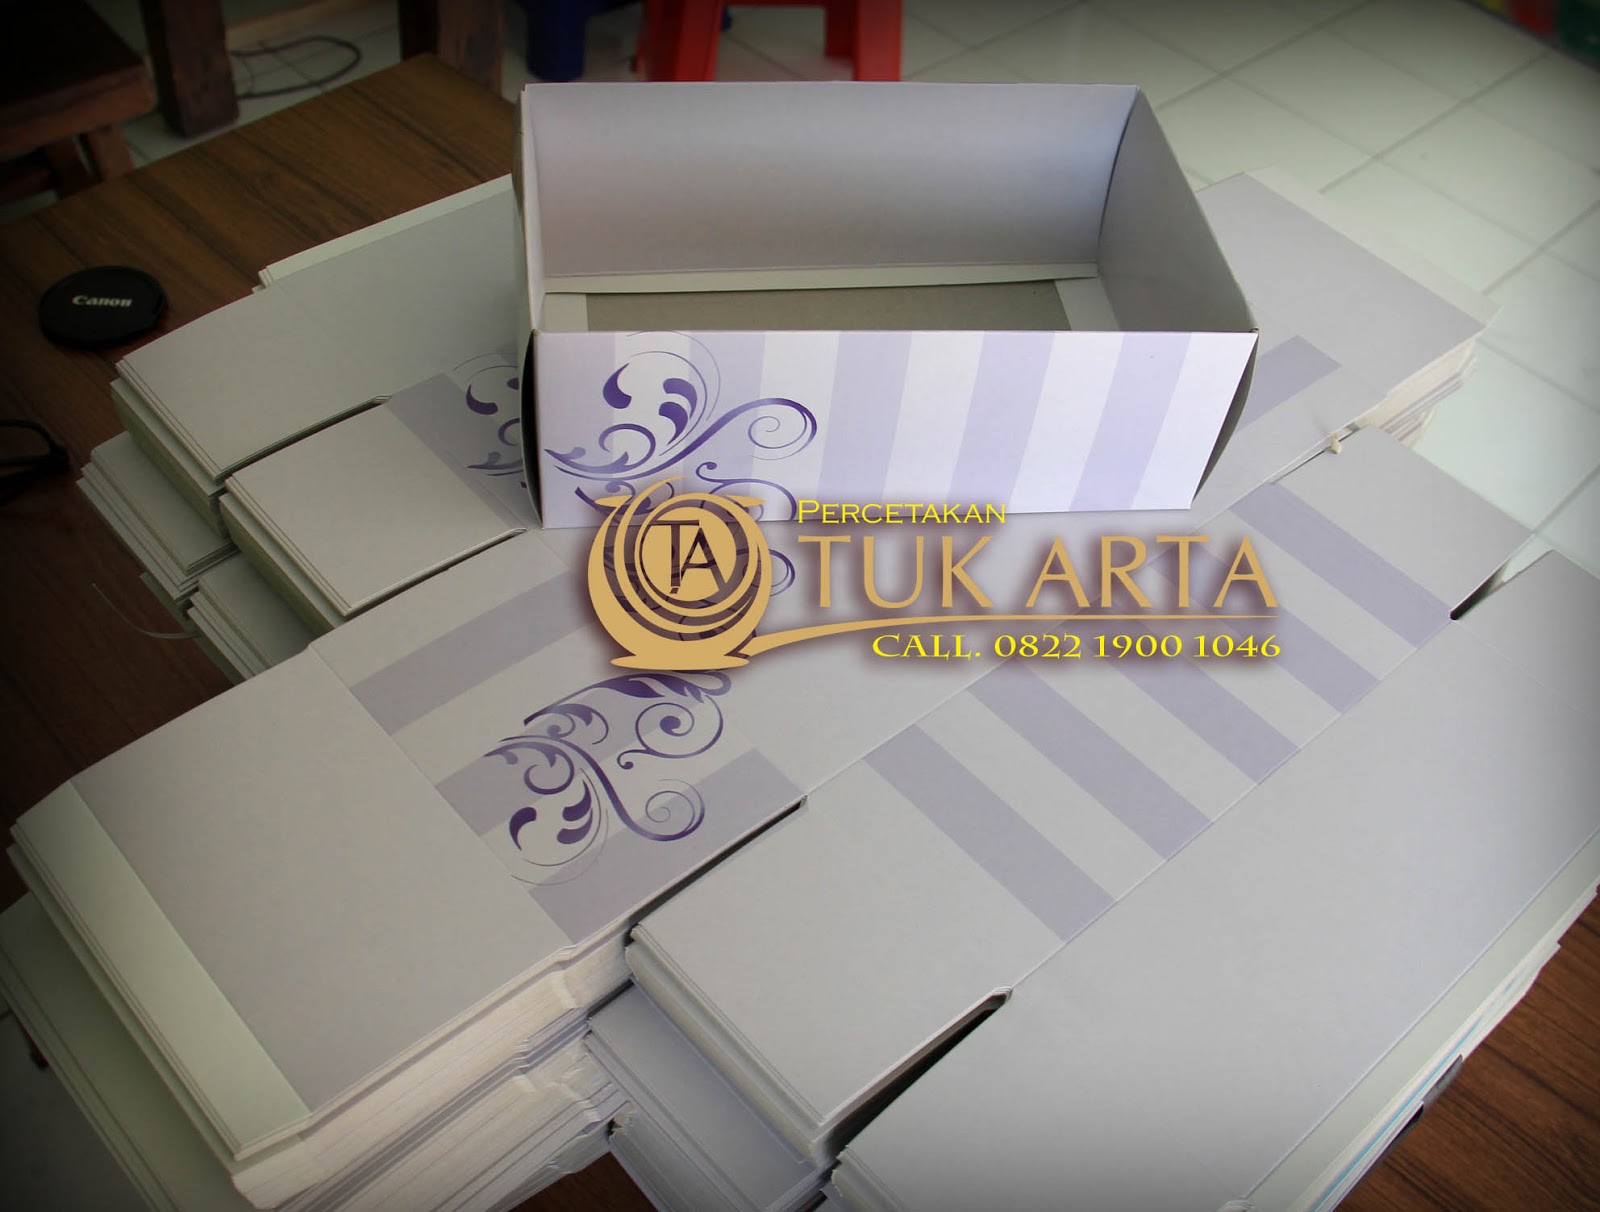 Tuk Arta Percetakan Packaging Dus Cetak Murah Surabaya 